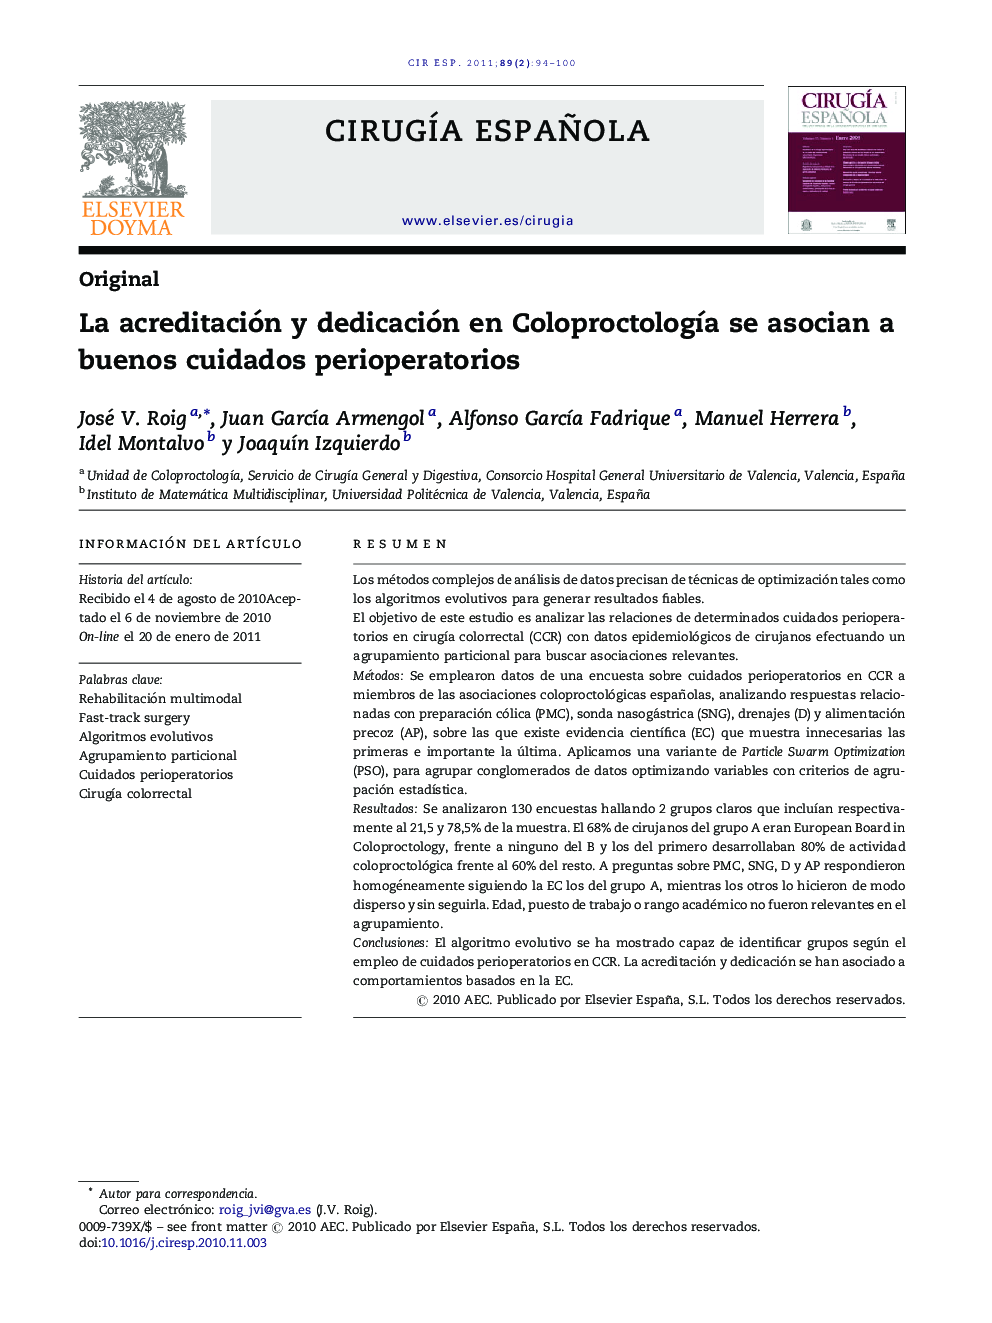 La acreditación y dedicación en ColoproctologÃ­a se asocian a buenos cuidados perioperatorios